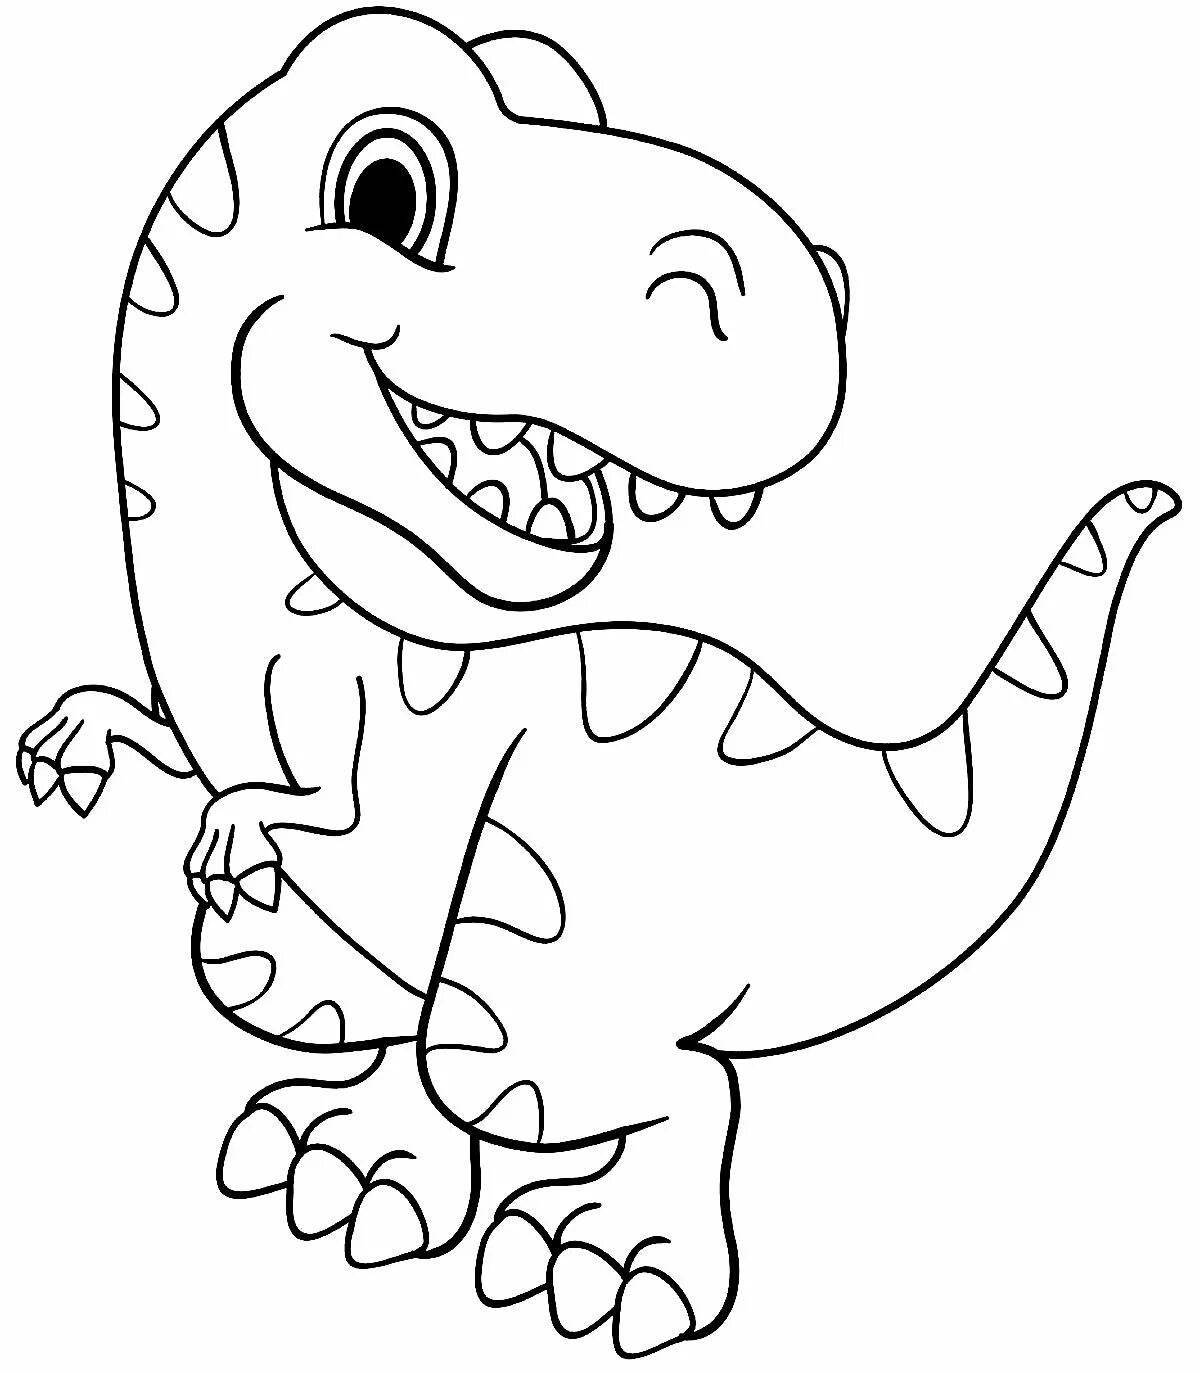 Colouring funny dino rex